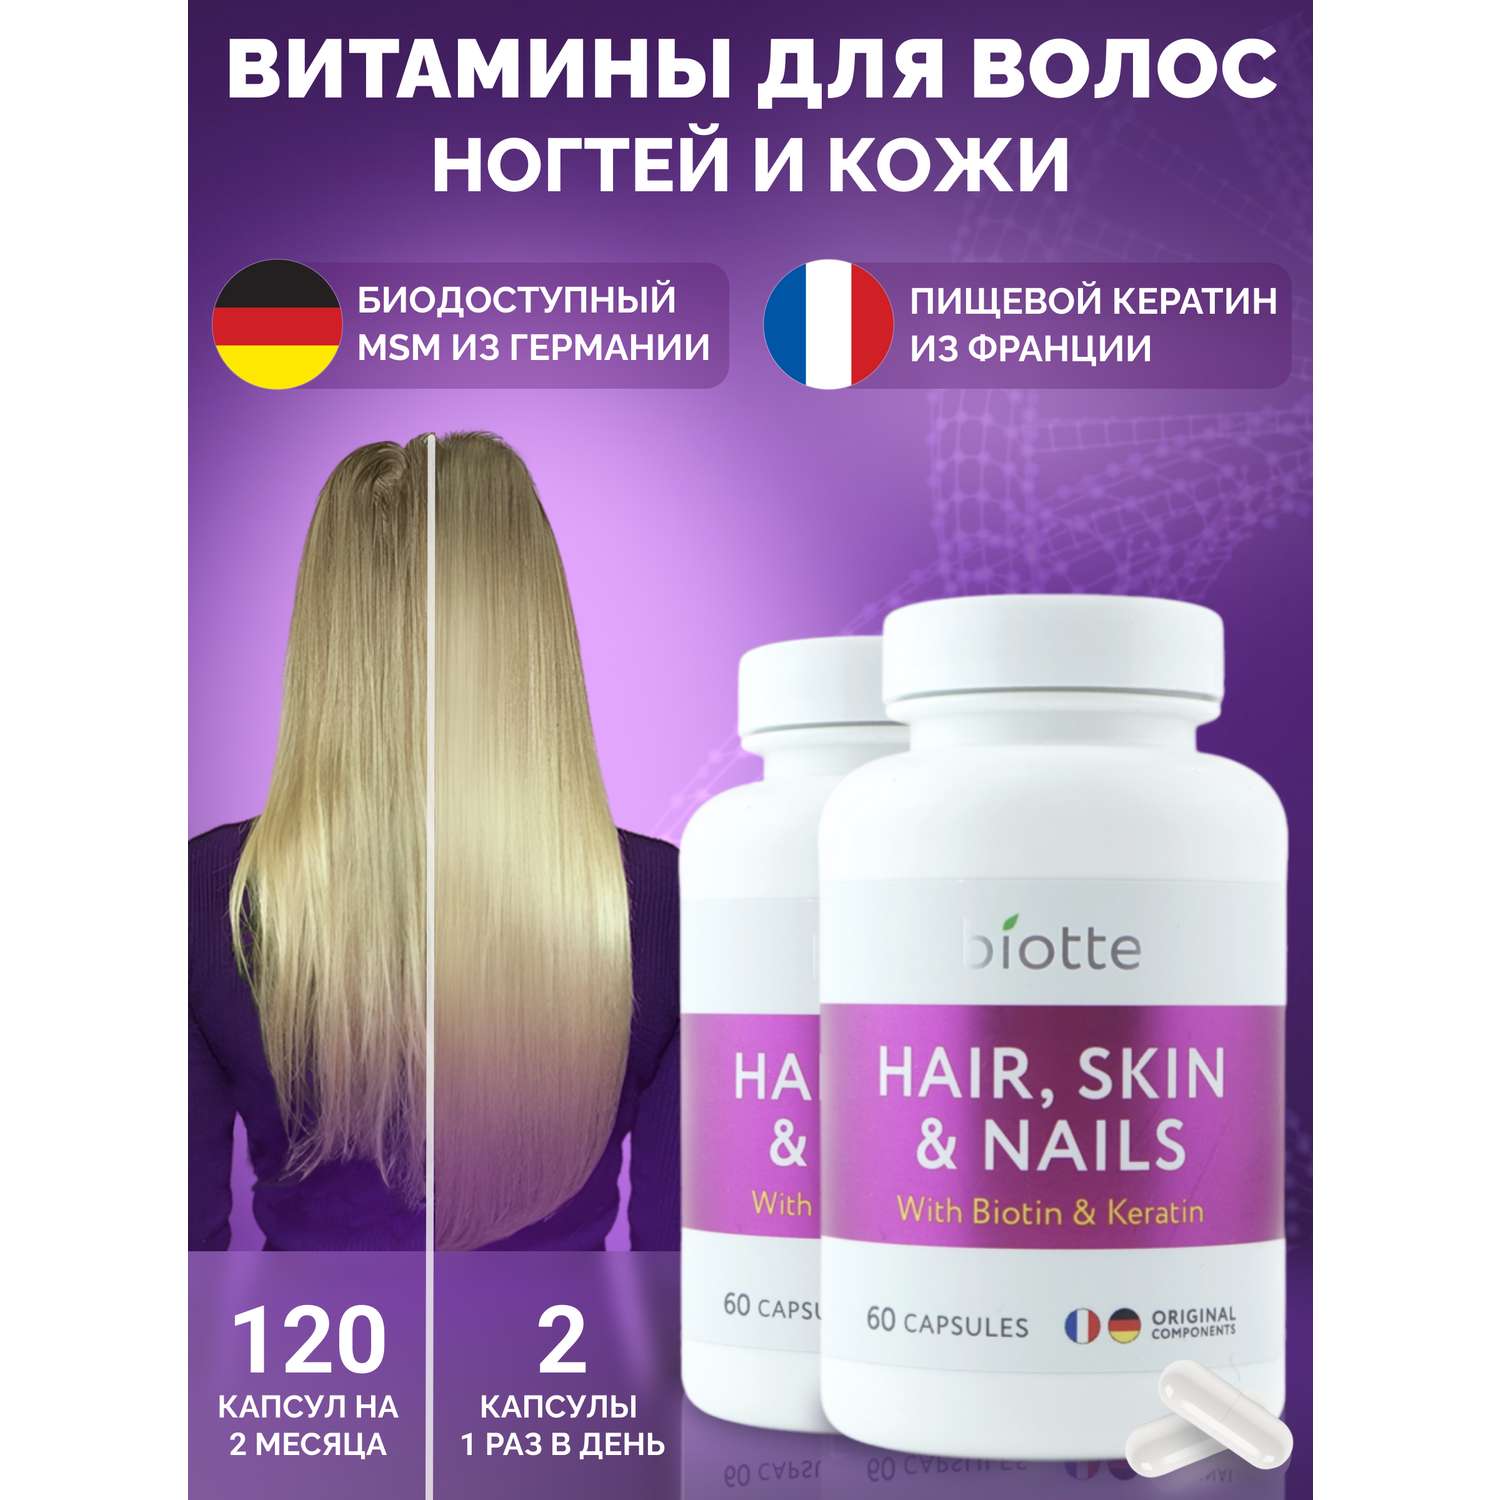 Витамины для волос кожи ногтей BIOTTE витаминно-минеральный комплекс БАД 120 капсул - фото 1